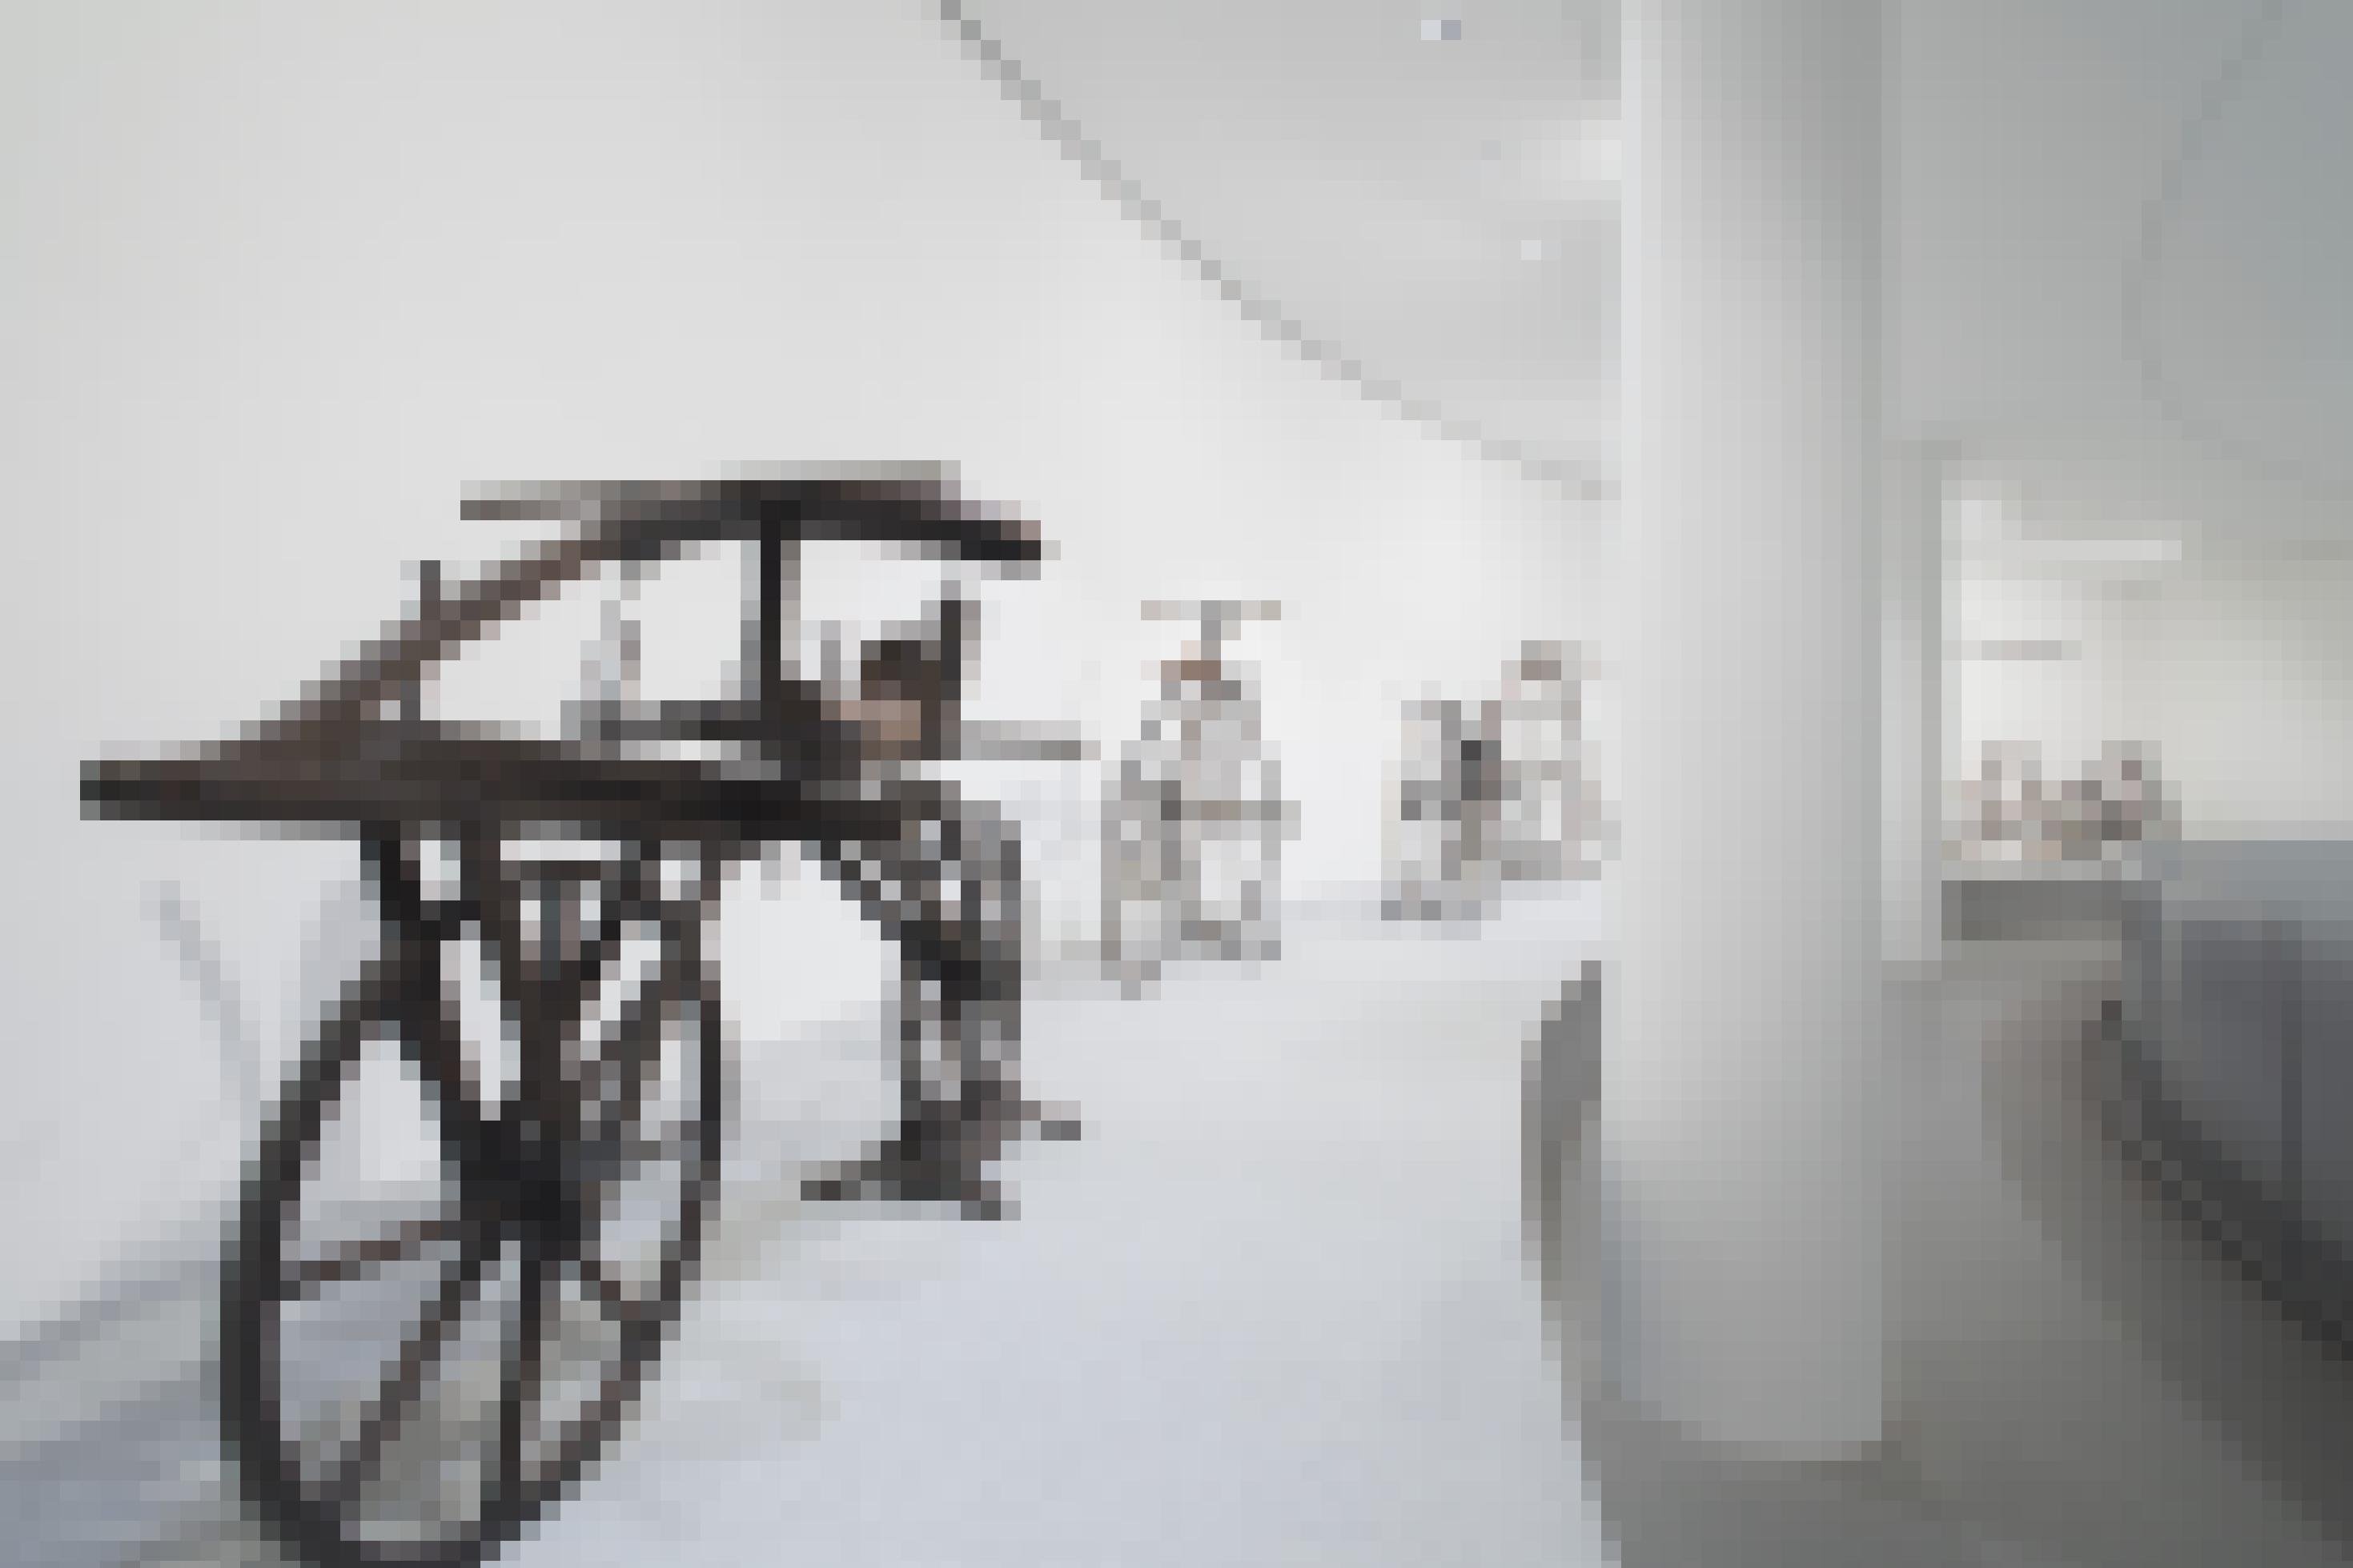 Ausblick in das Rund der Ausstellung mit drei alten Zweirädern im Vordergrund.